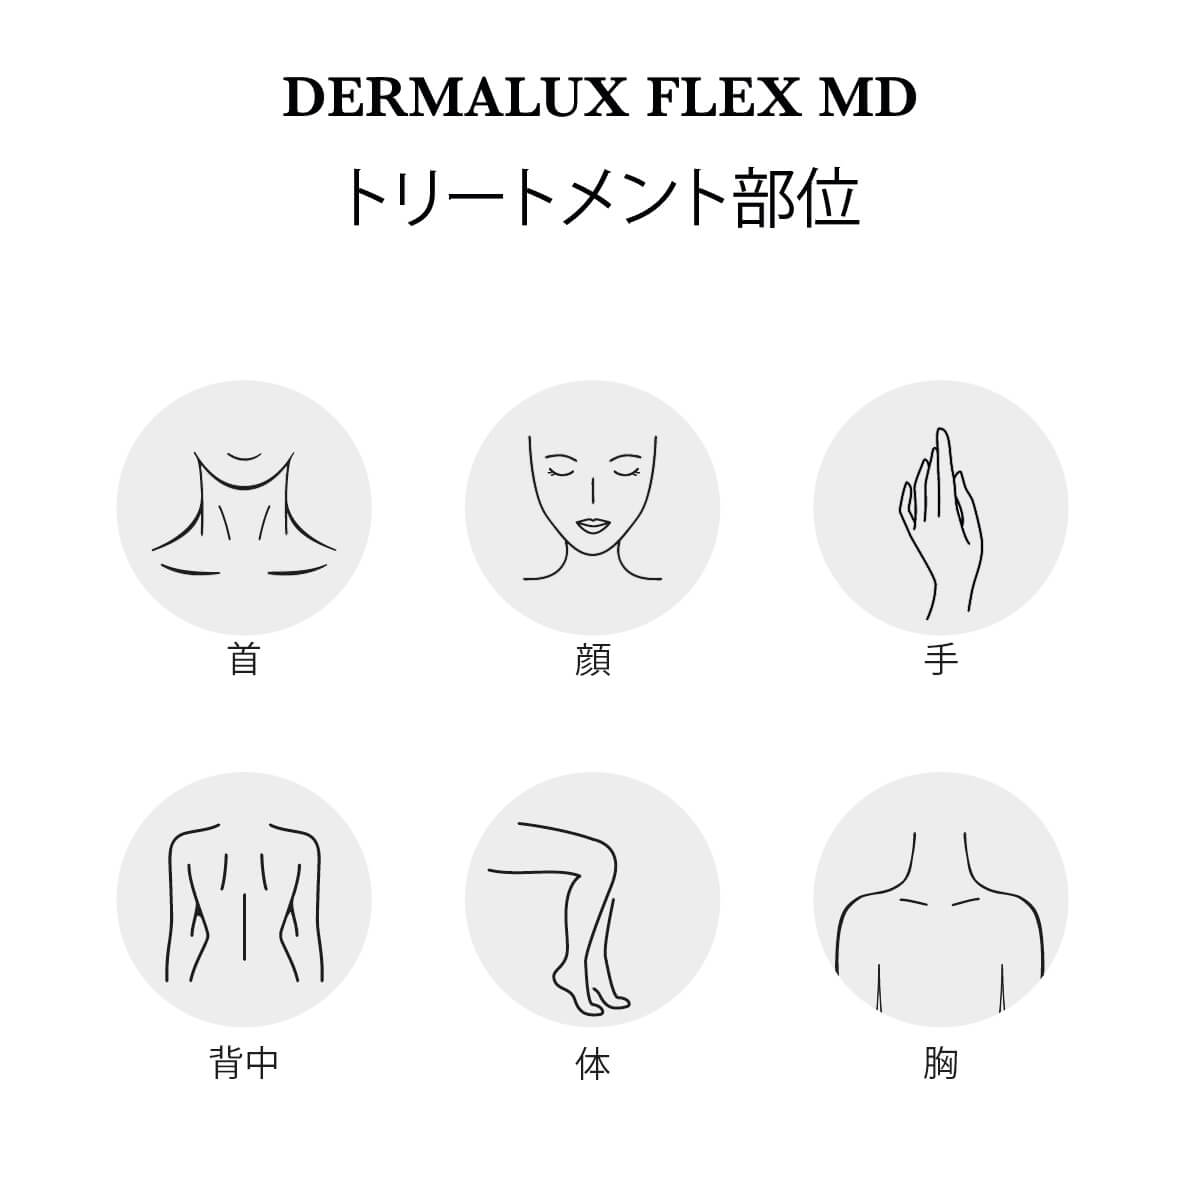 Dermalux フレックス MD | カレントボディ ジャパン